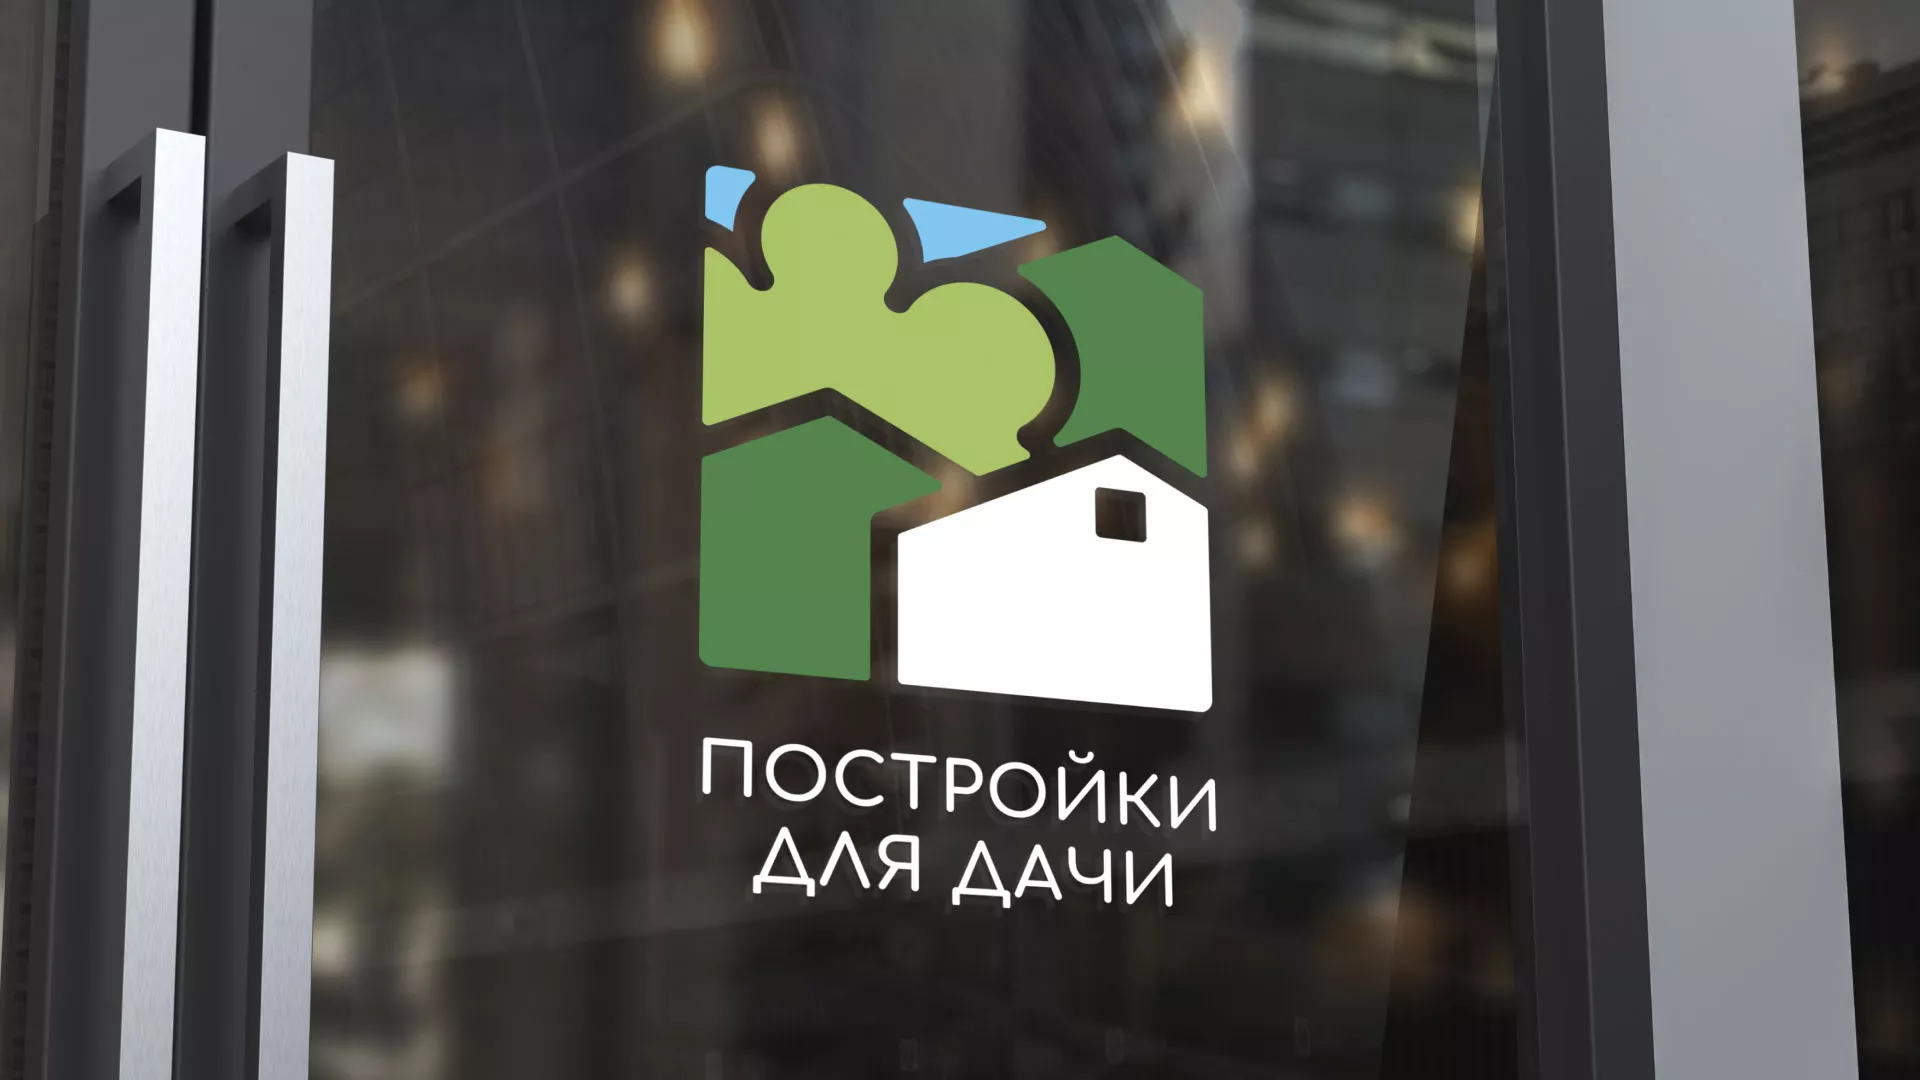 Разработка логотипа в Петровске-Забайкальском для компании «Постройки для дачи»